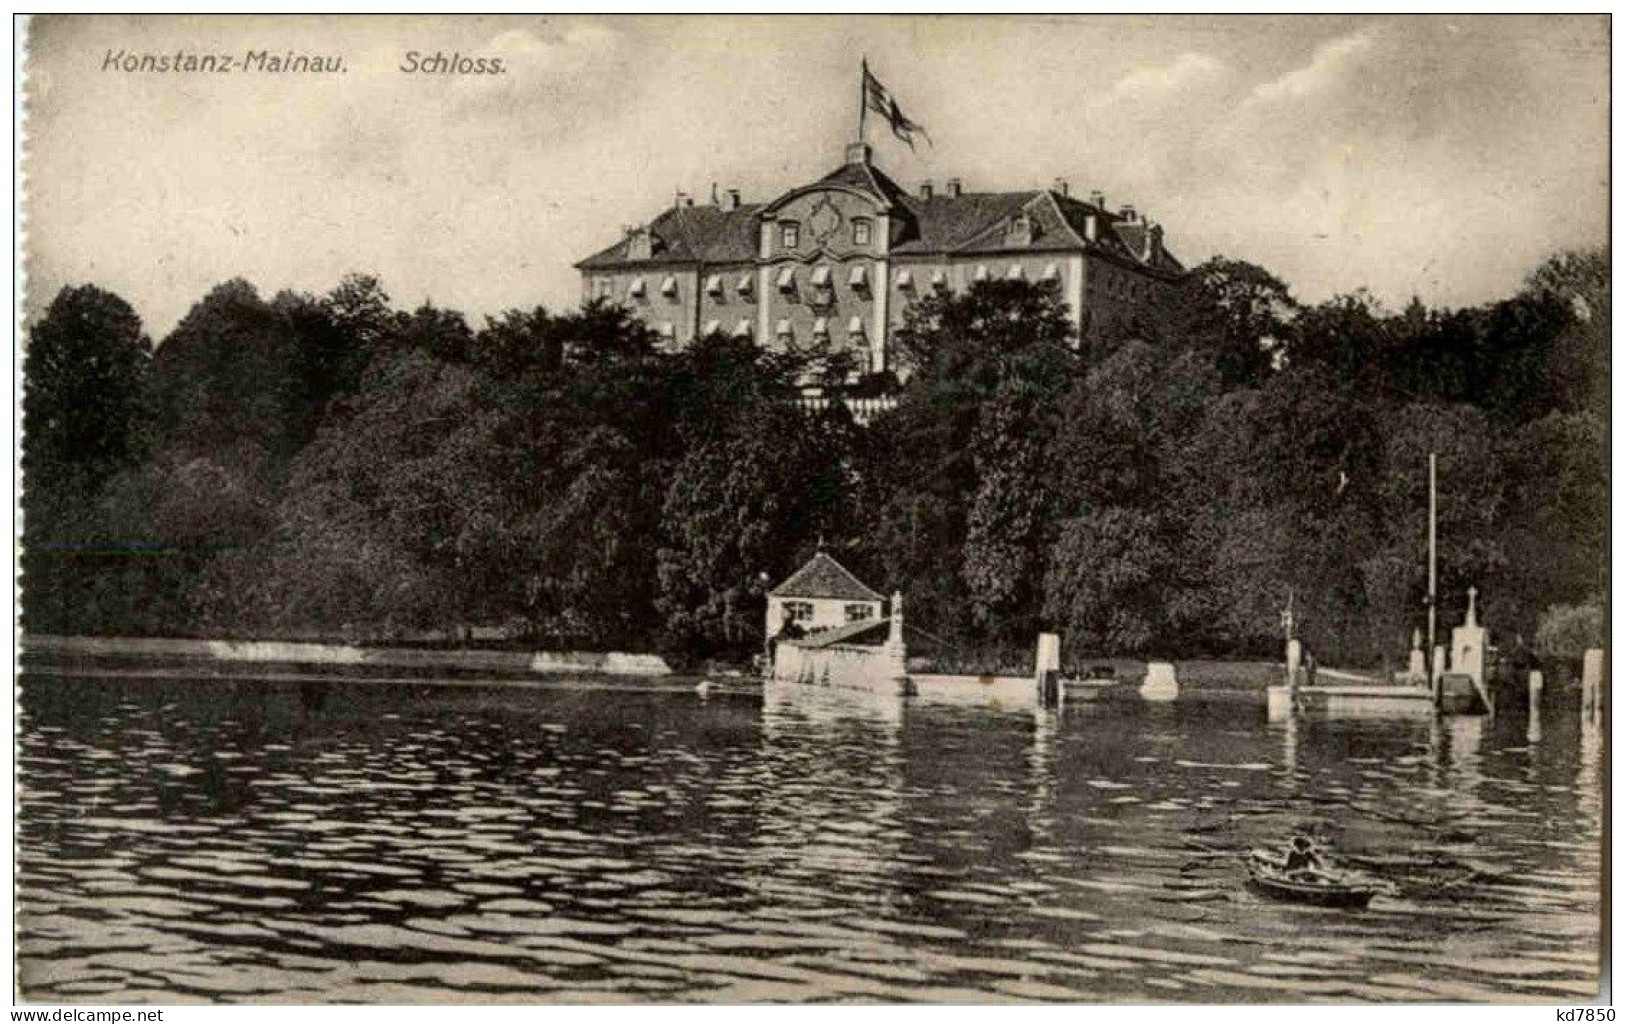 Konstanz - Mainau - Schloss - Konstanz